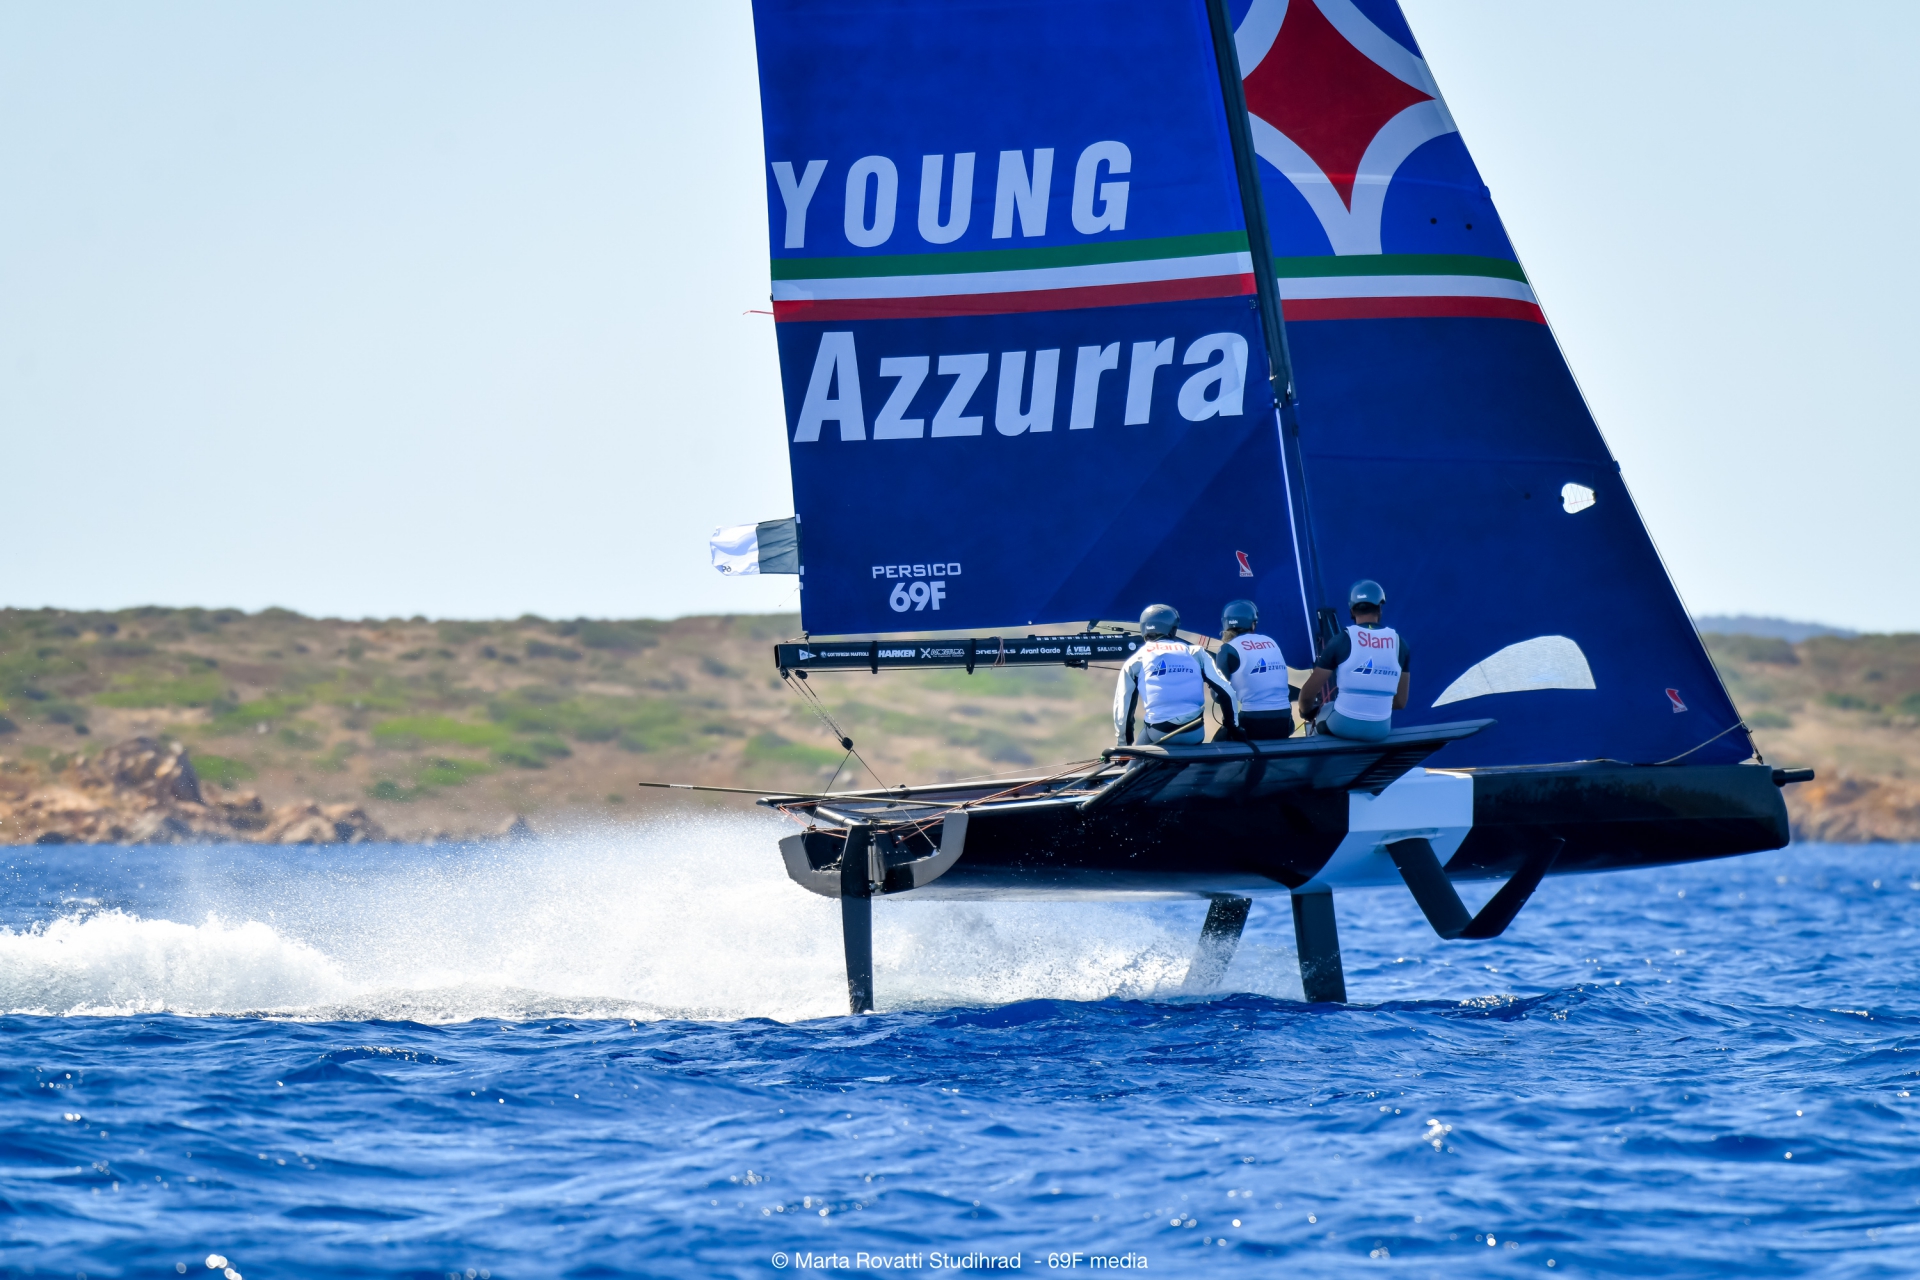 Young Azzurra wins the Persico 69F Grand Prix 2.1 - Press Release - Yacht Club Costa Smeralda